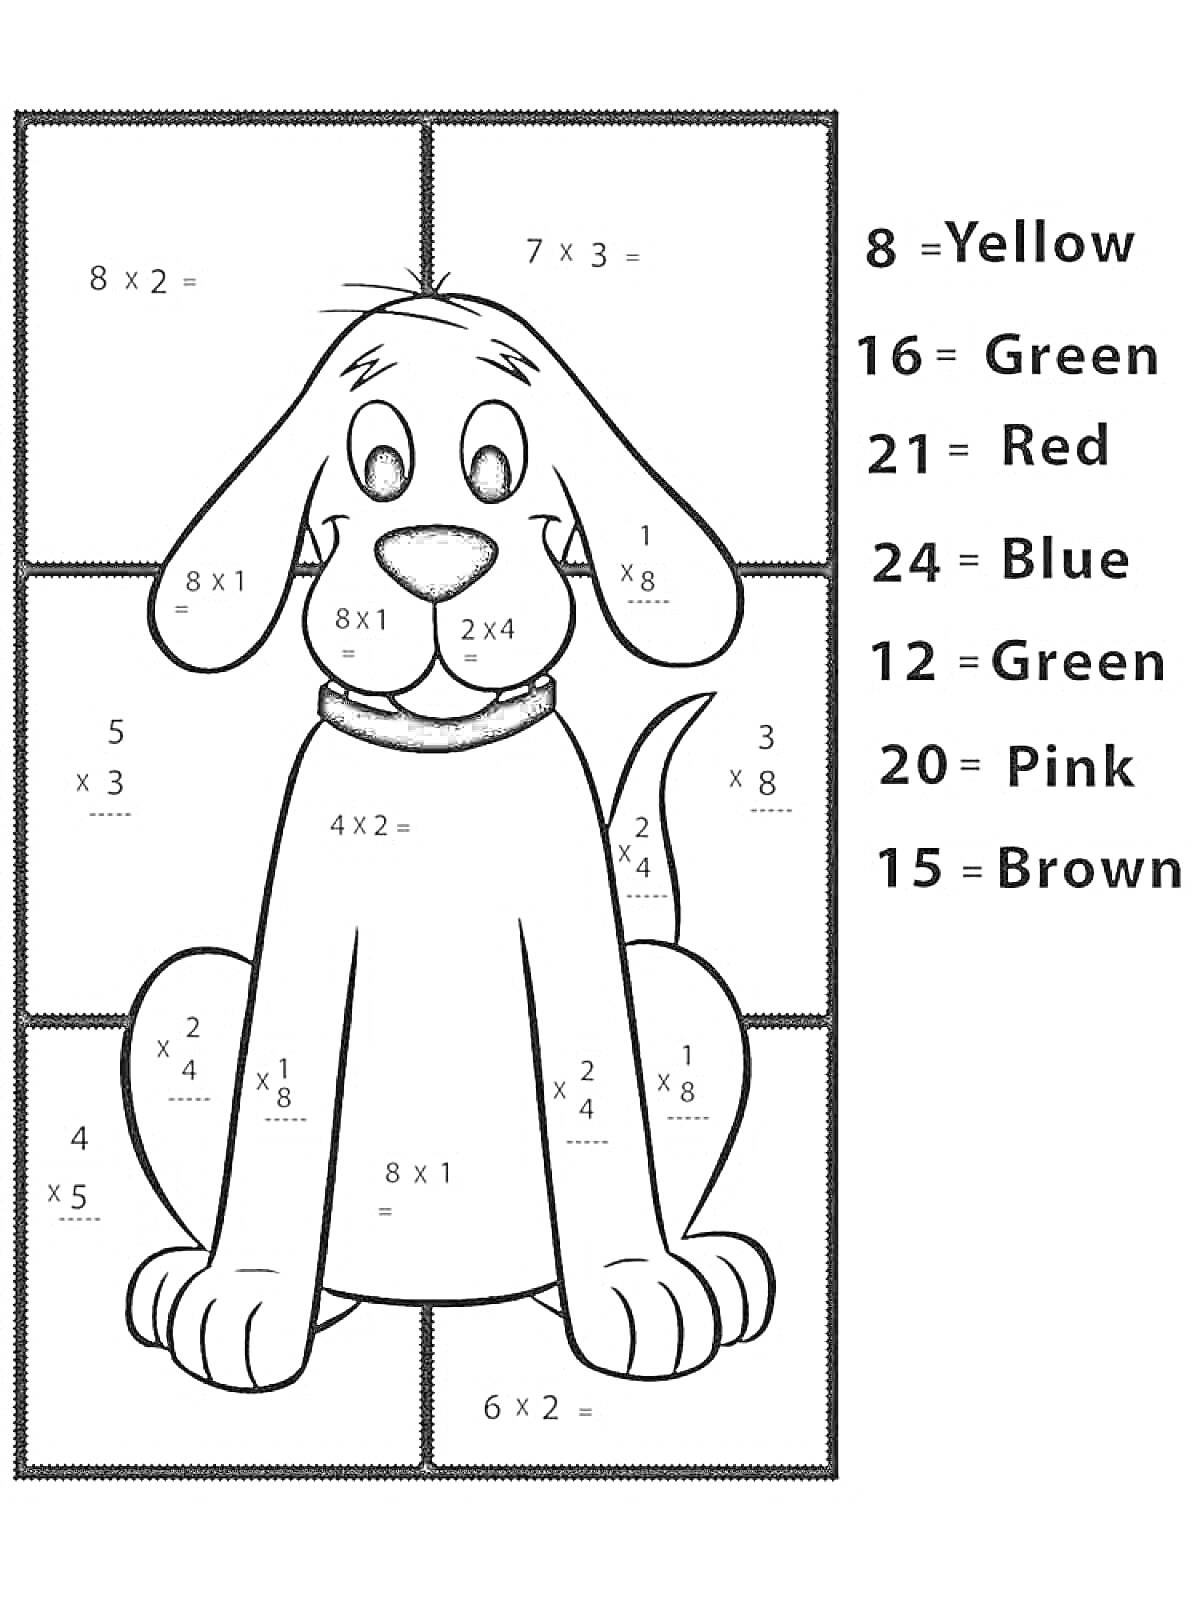 Раскраска с примерами на умножение с собакой и кодом цветов для раскрашивания